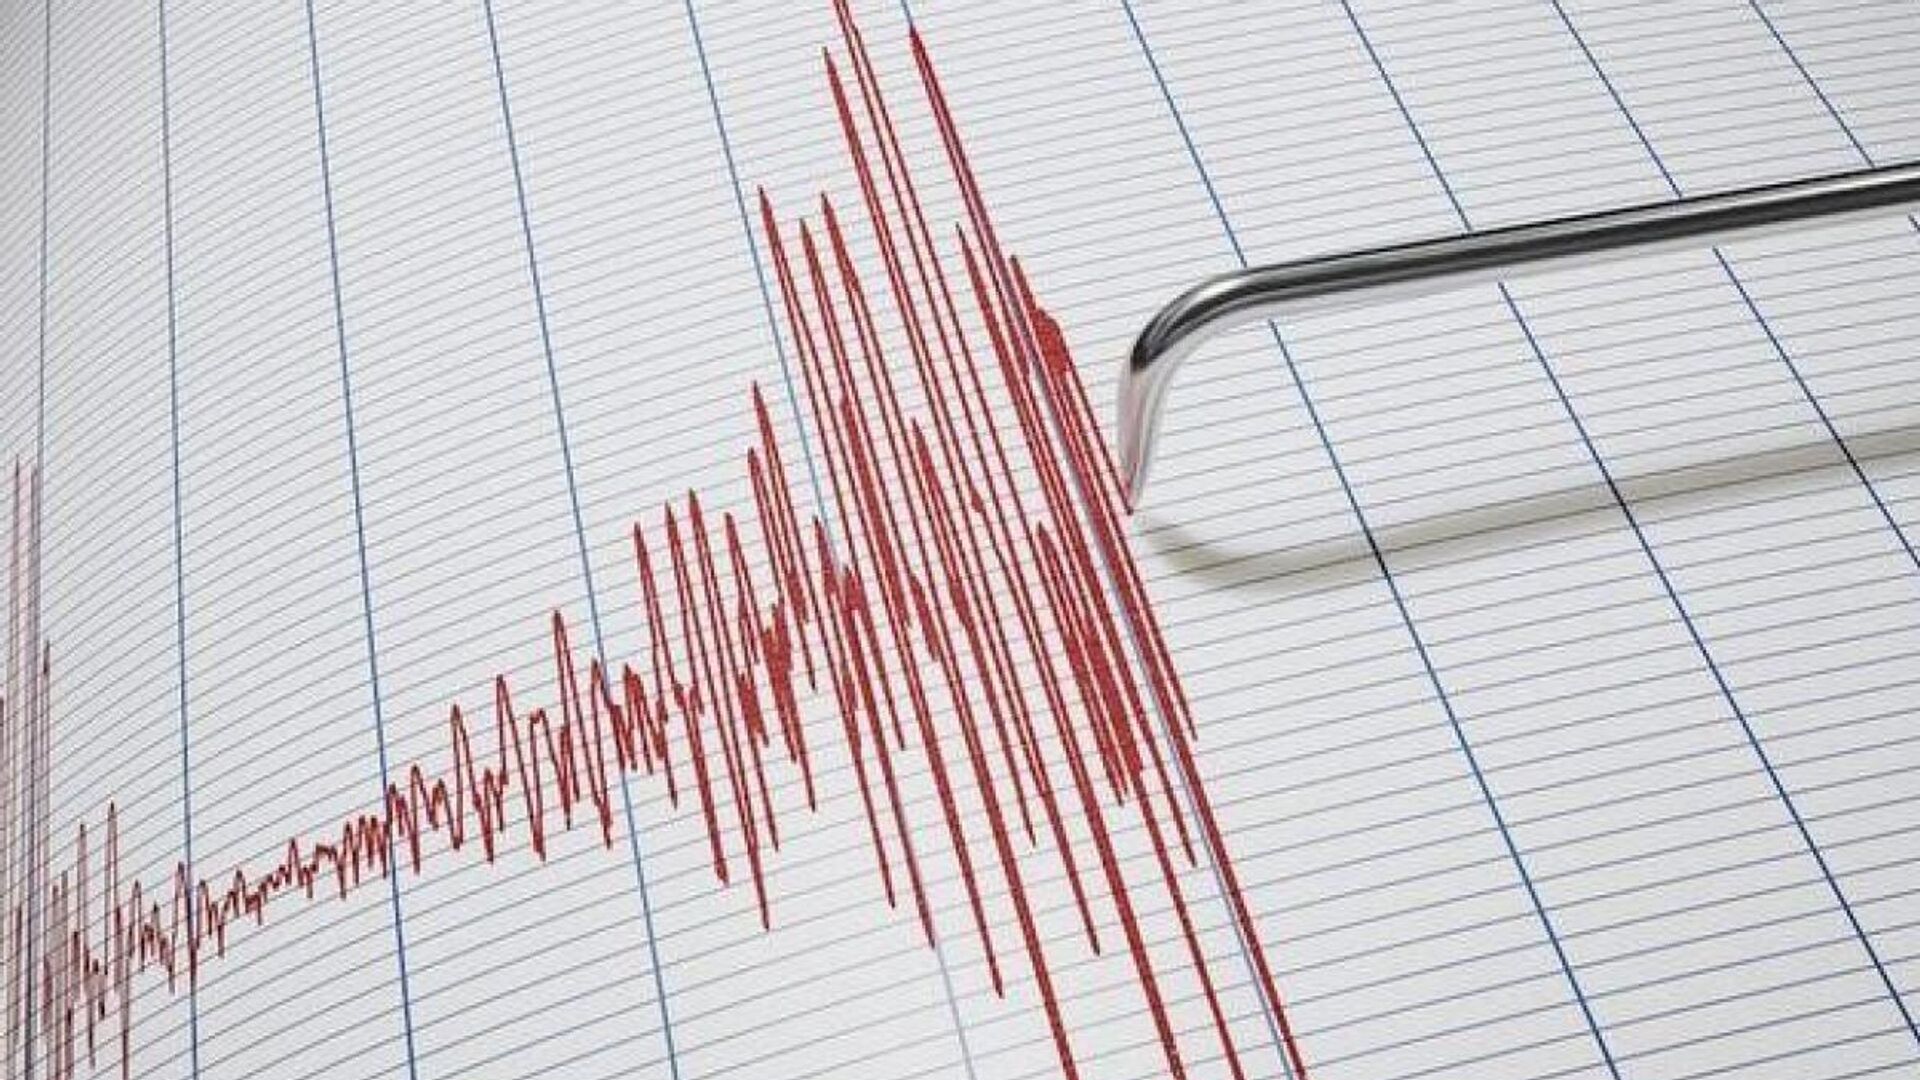 Sabaha karşı Hatay'da yaşanan deprem korkuya neden oldu